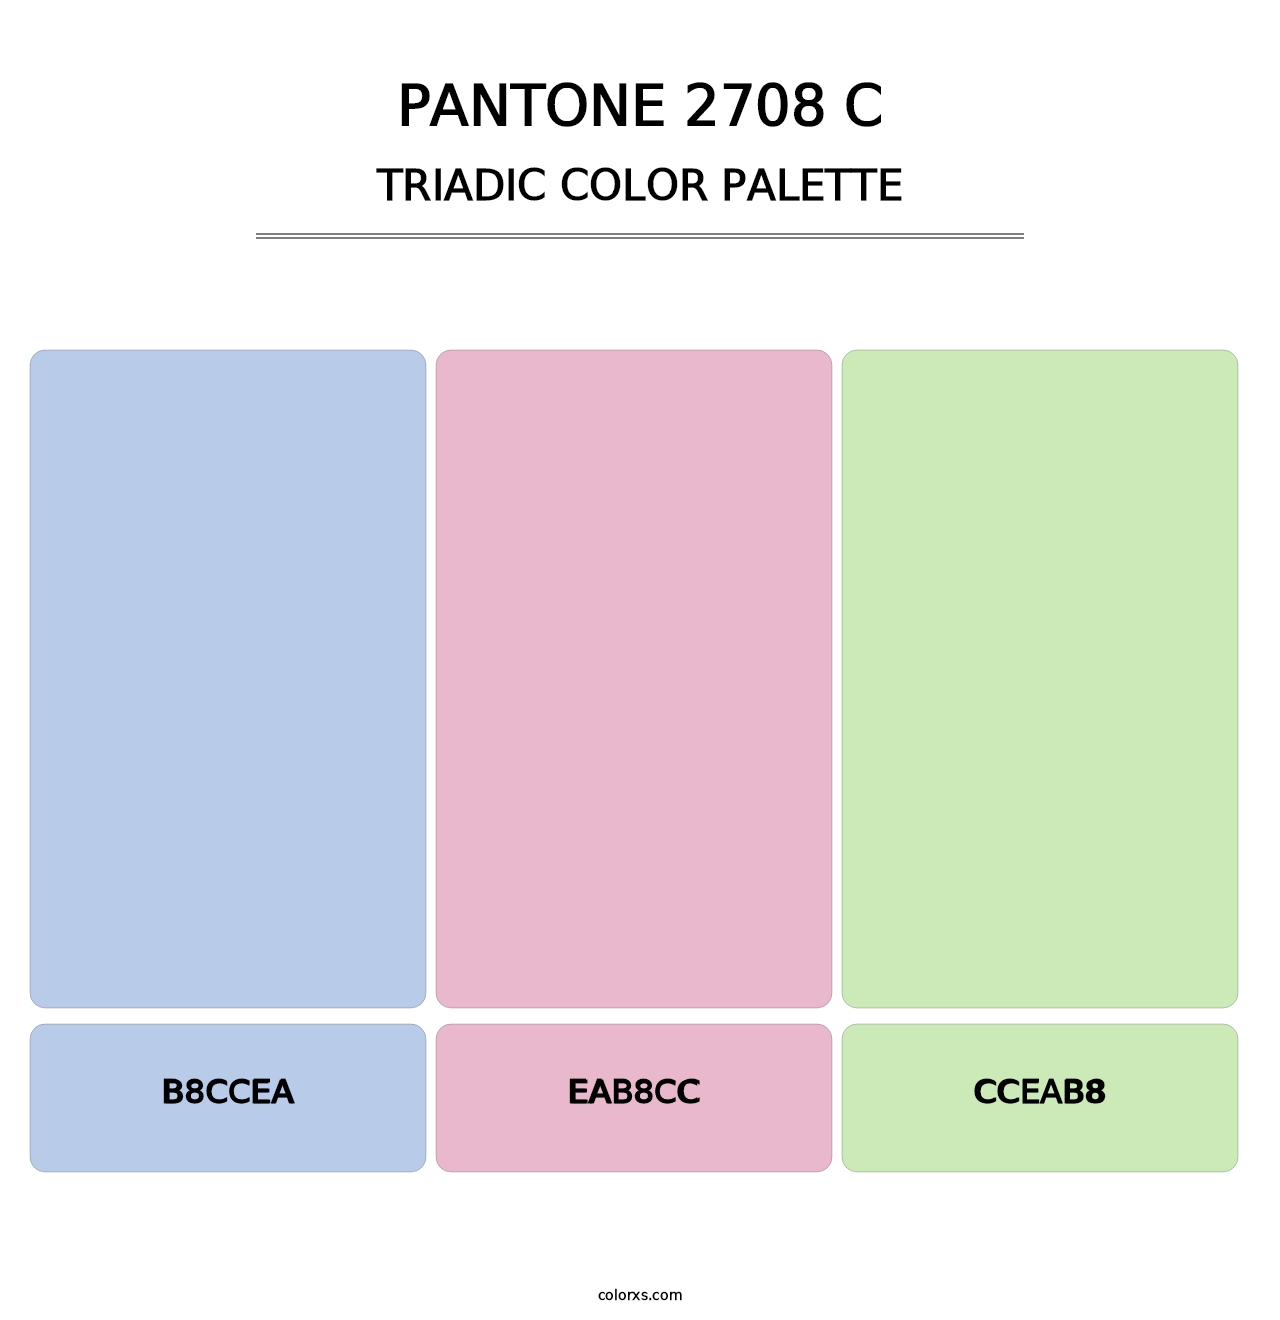 PANTONE 2708 C - Triadic Color Palette